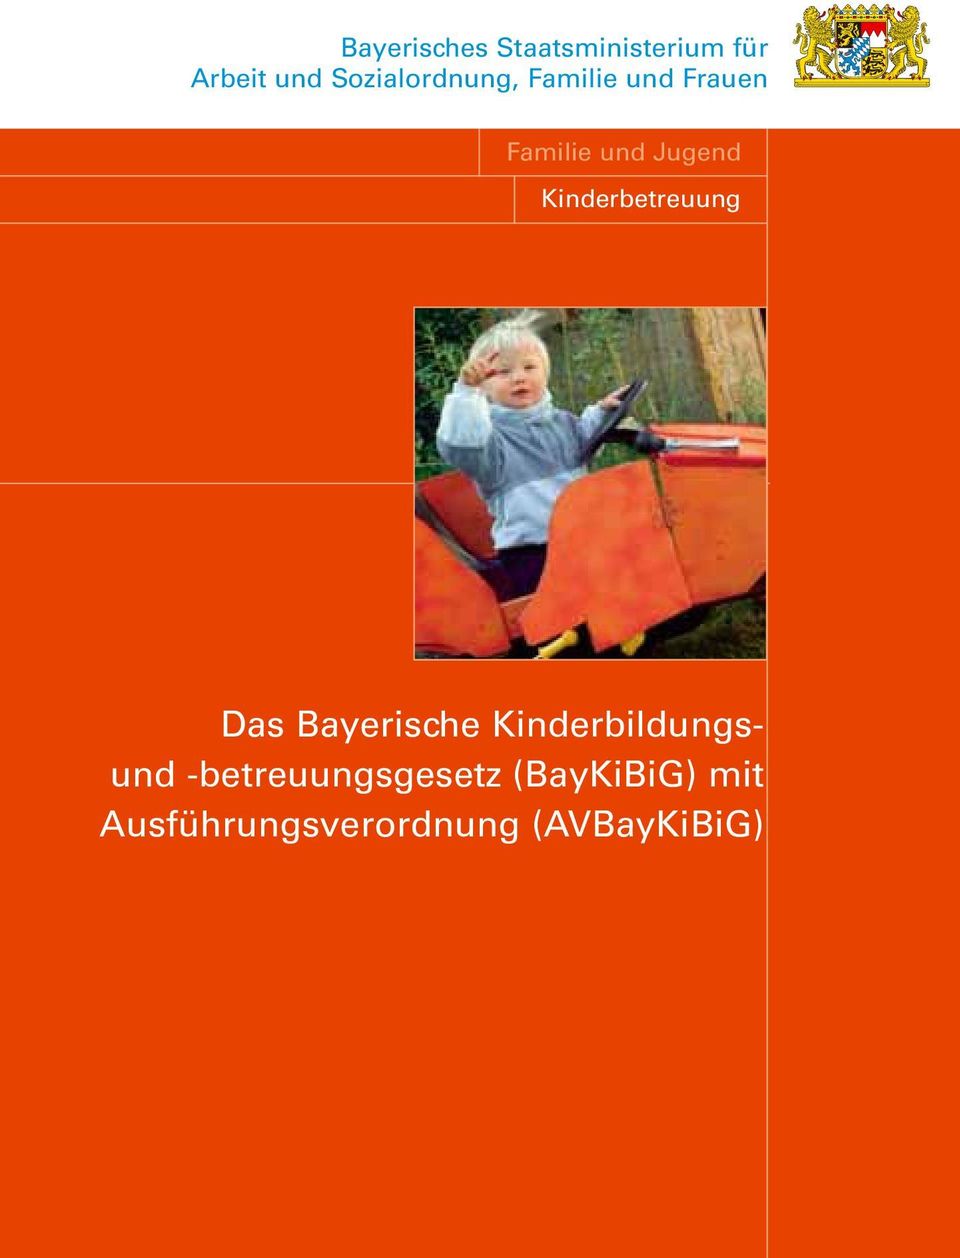 Kinderbetreuung Das Bayerische Kinderbildungsund